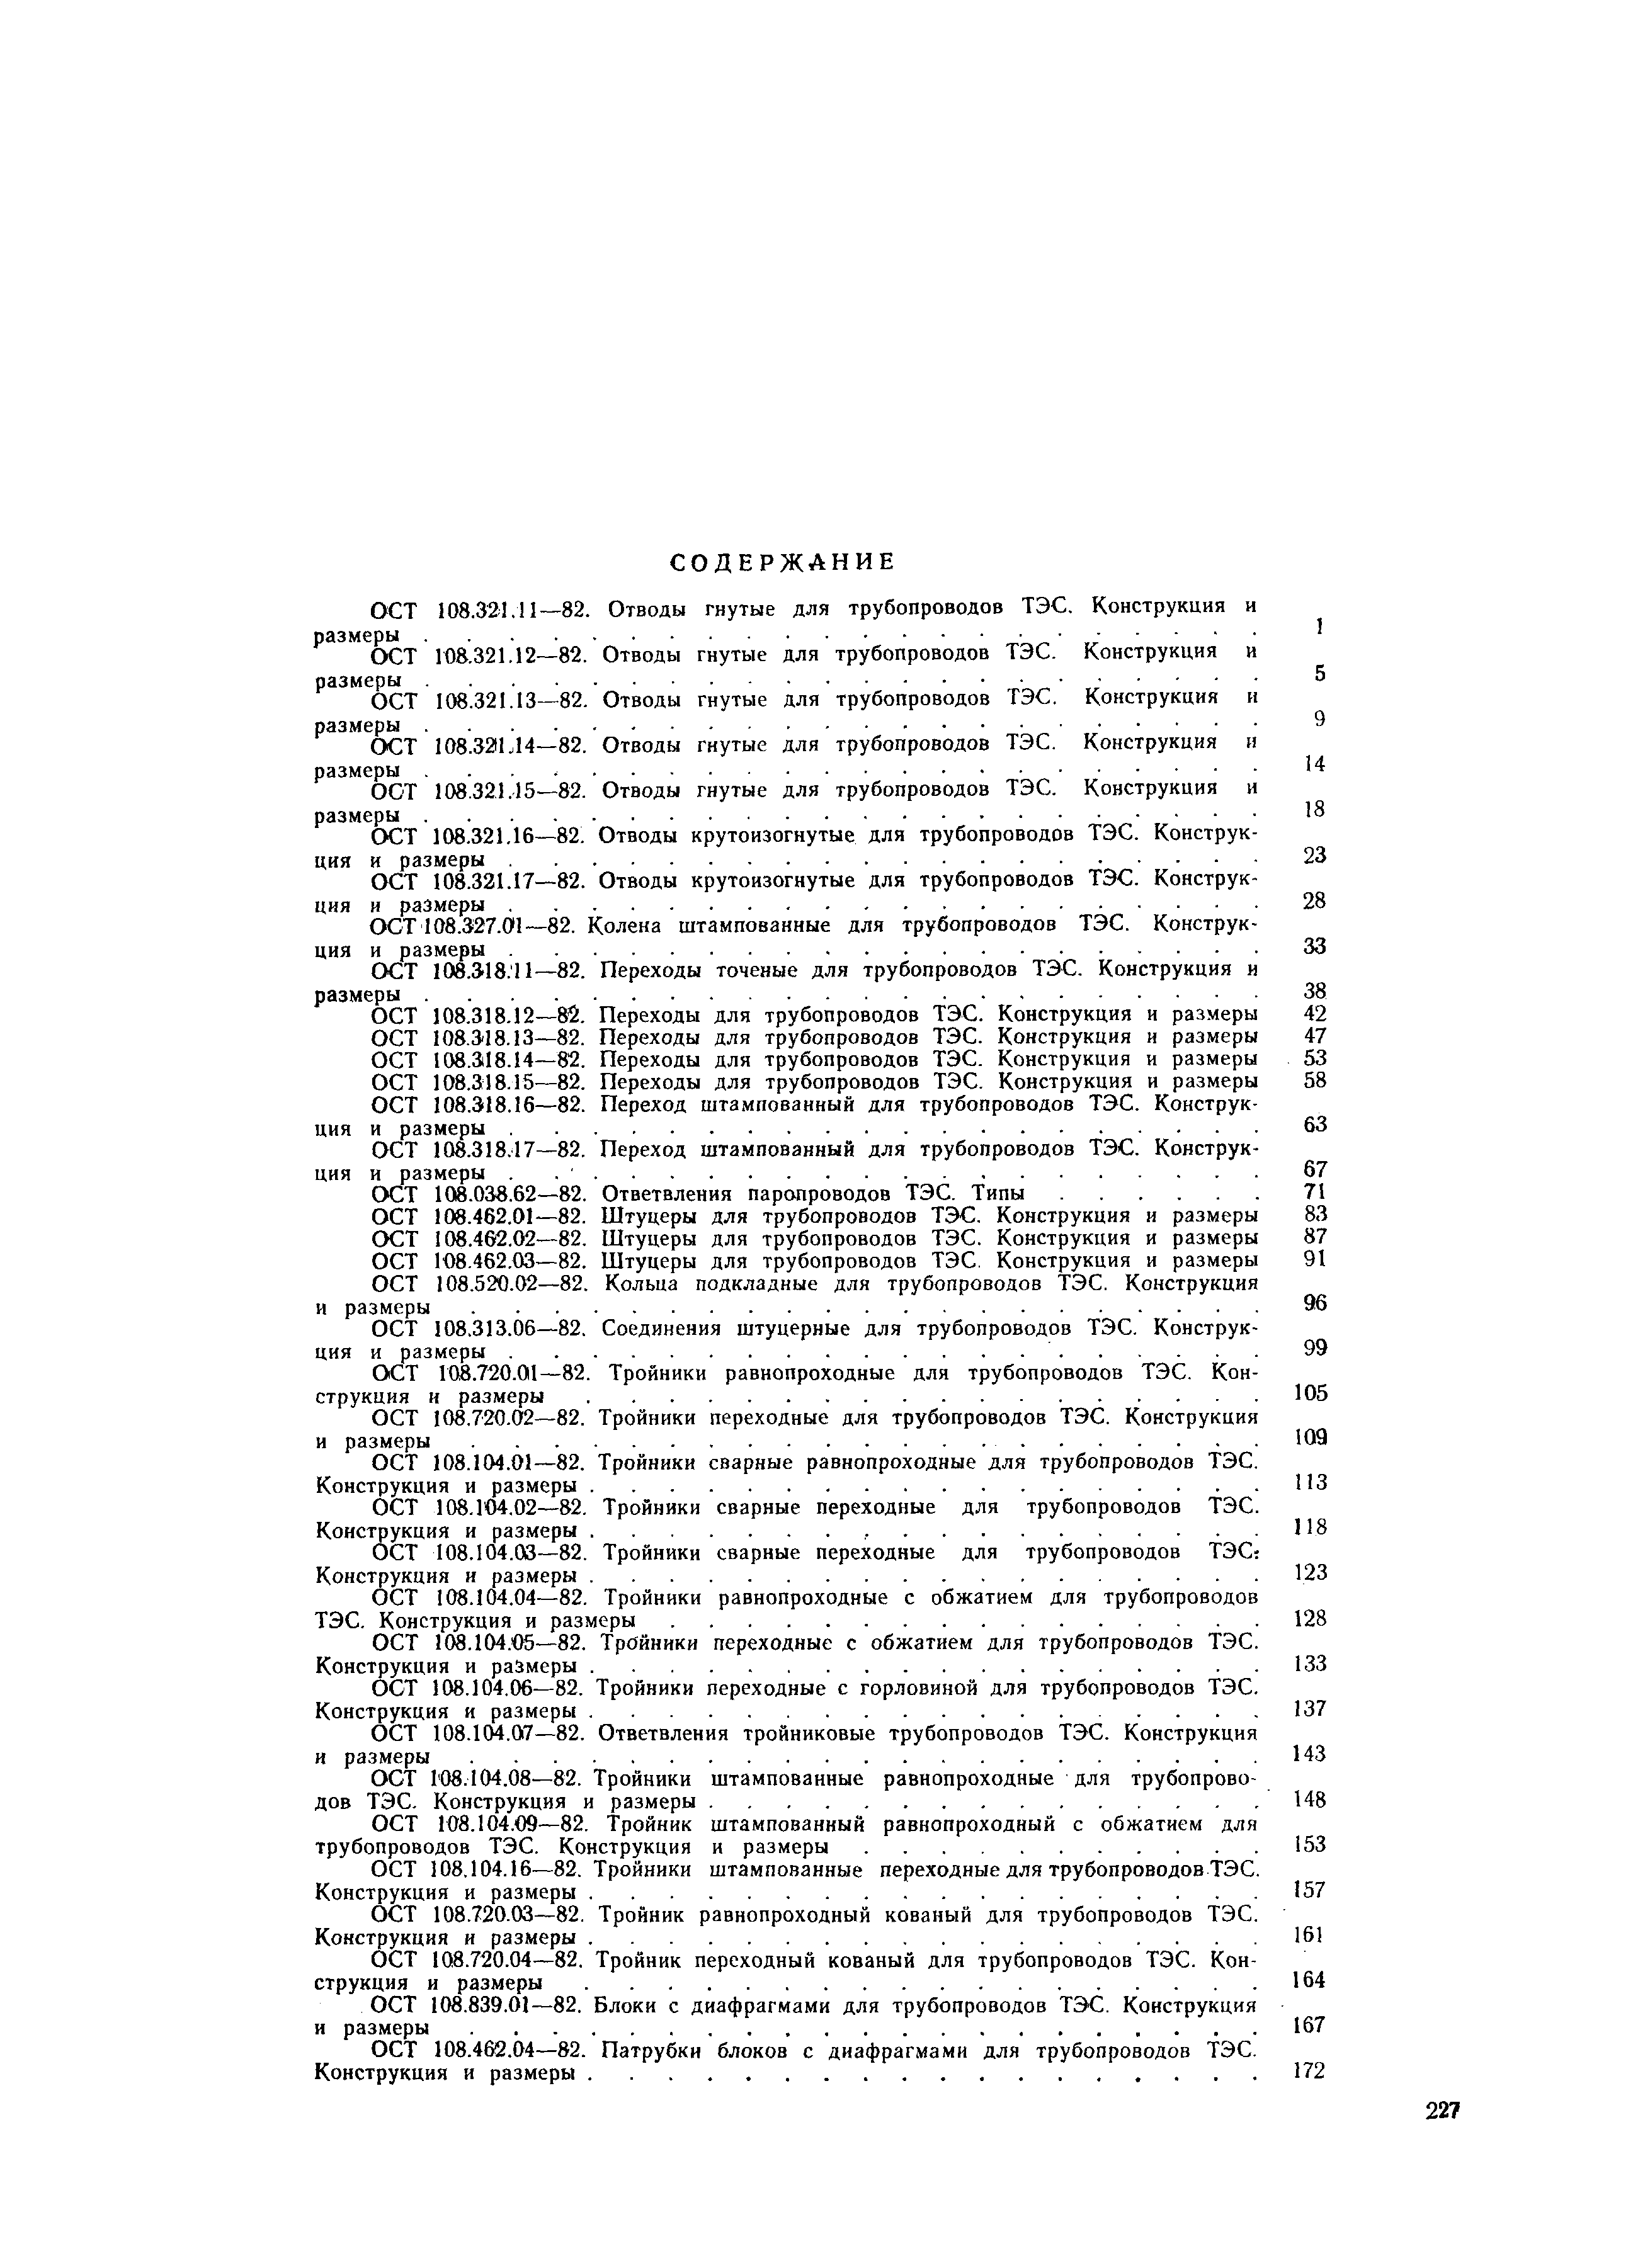 ОСТ 108.462.03-82